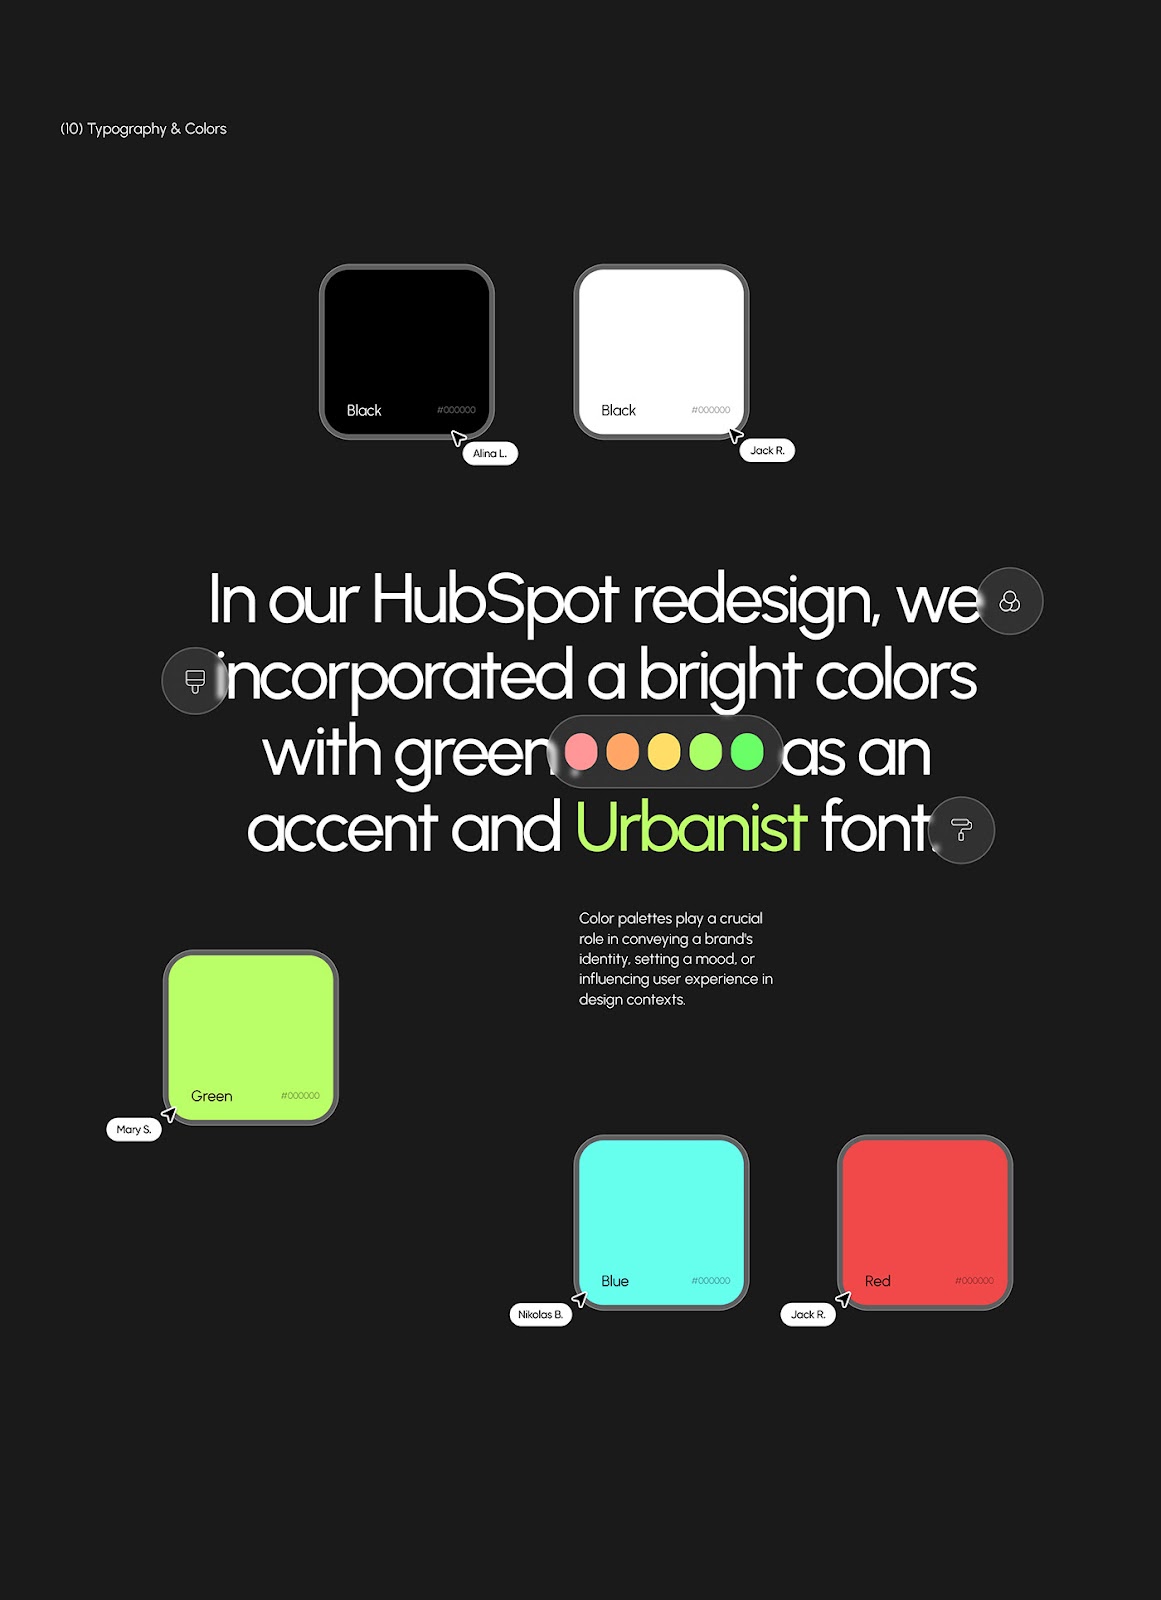 HubSpot CRM - UX UI Design